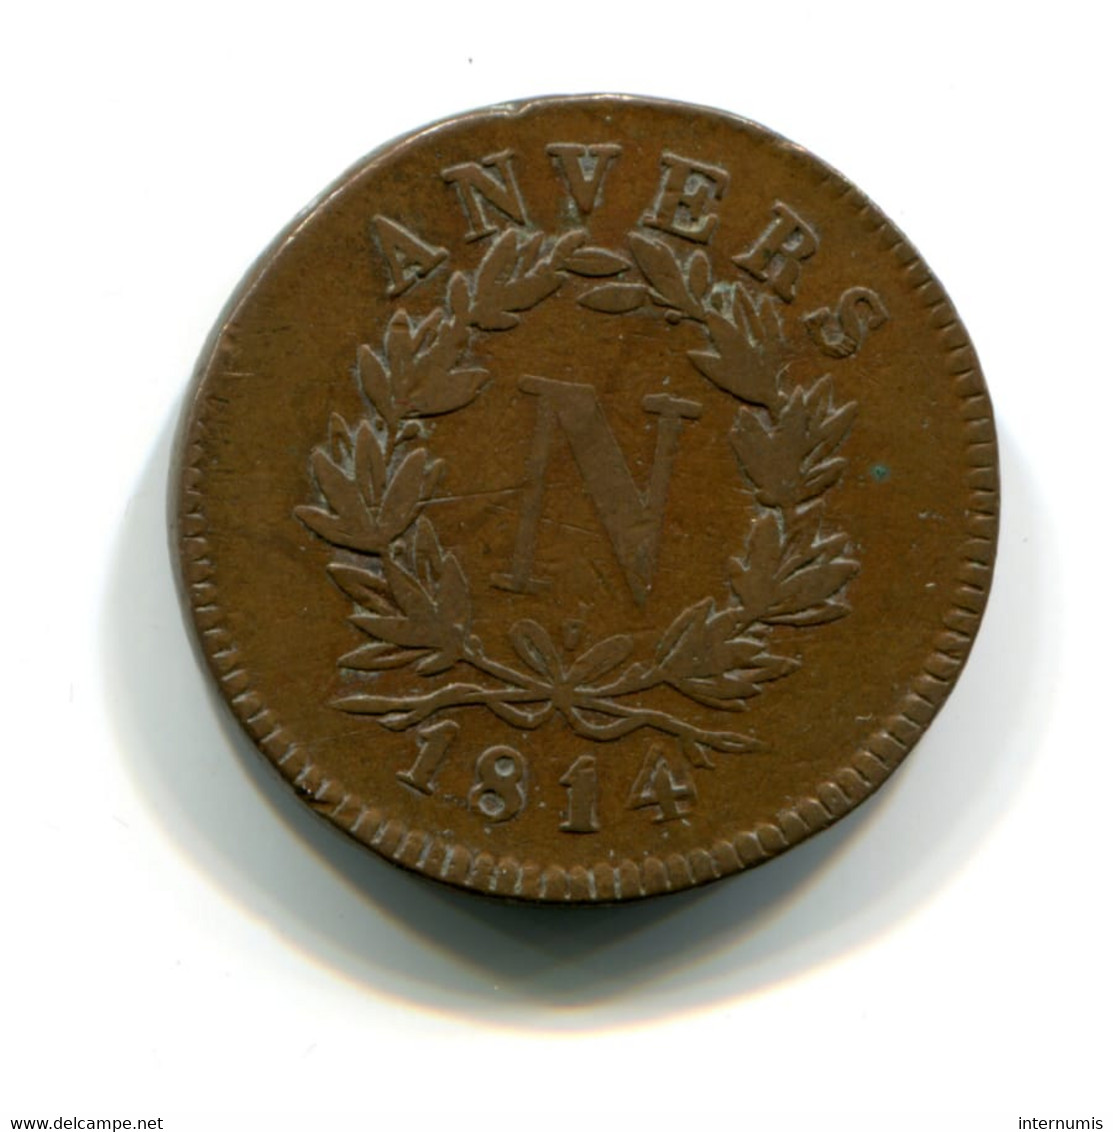 Belgique / Belgium, 5 Centimes, 1814-V, Siege D'Anvers - Napoléon, Bronze, WOLSCHOT, KM#2, F.115B/2, G.129b, COL.10a - 1814 Beleg Van Antwerpen